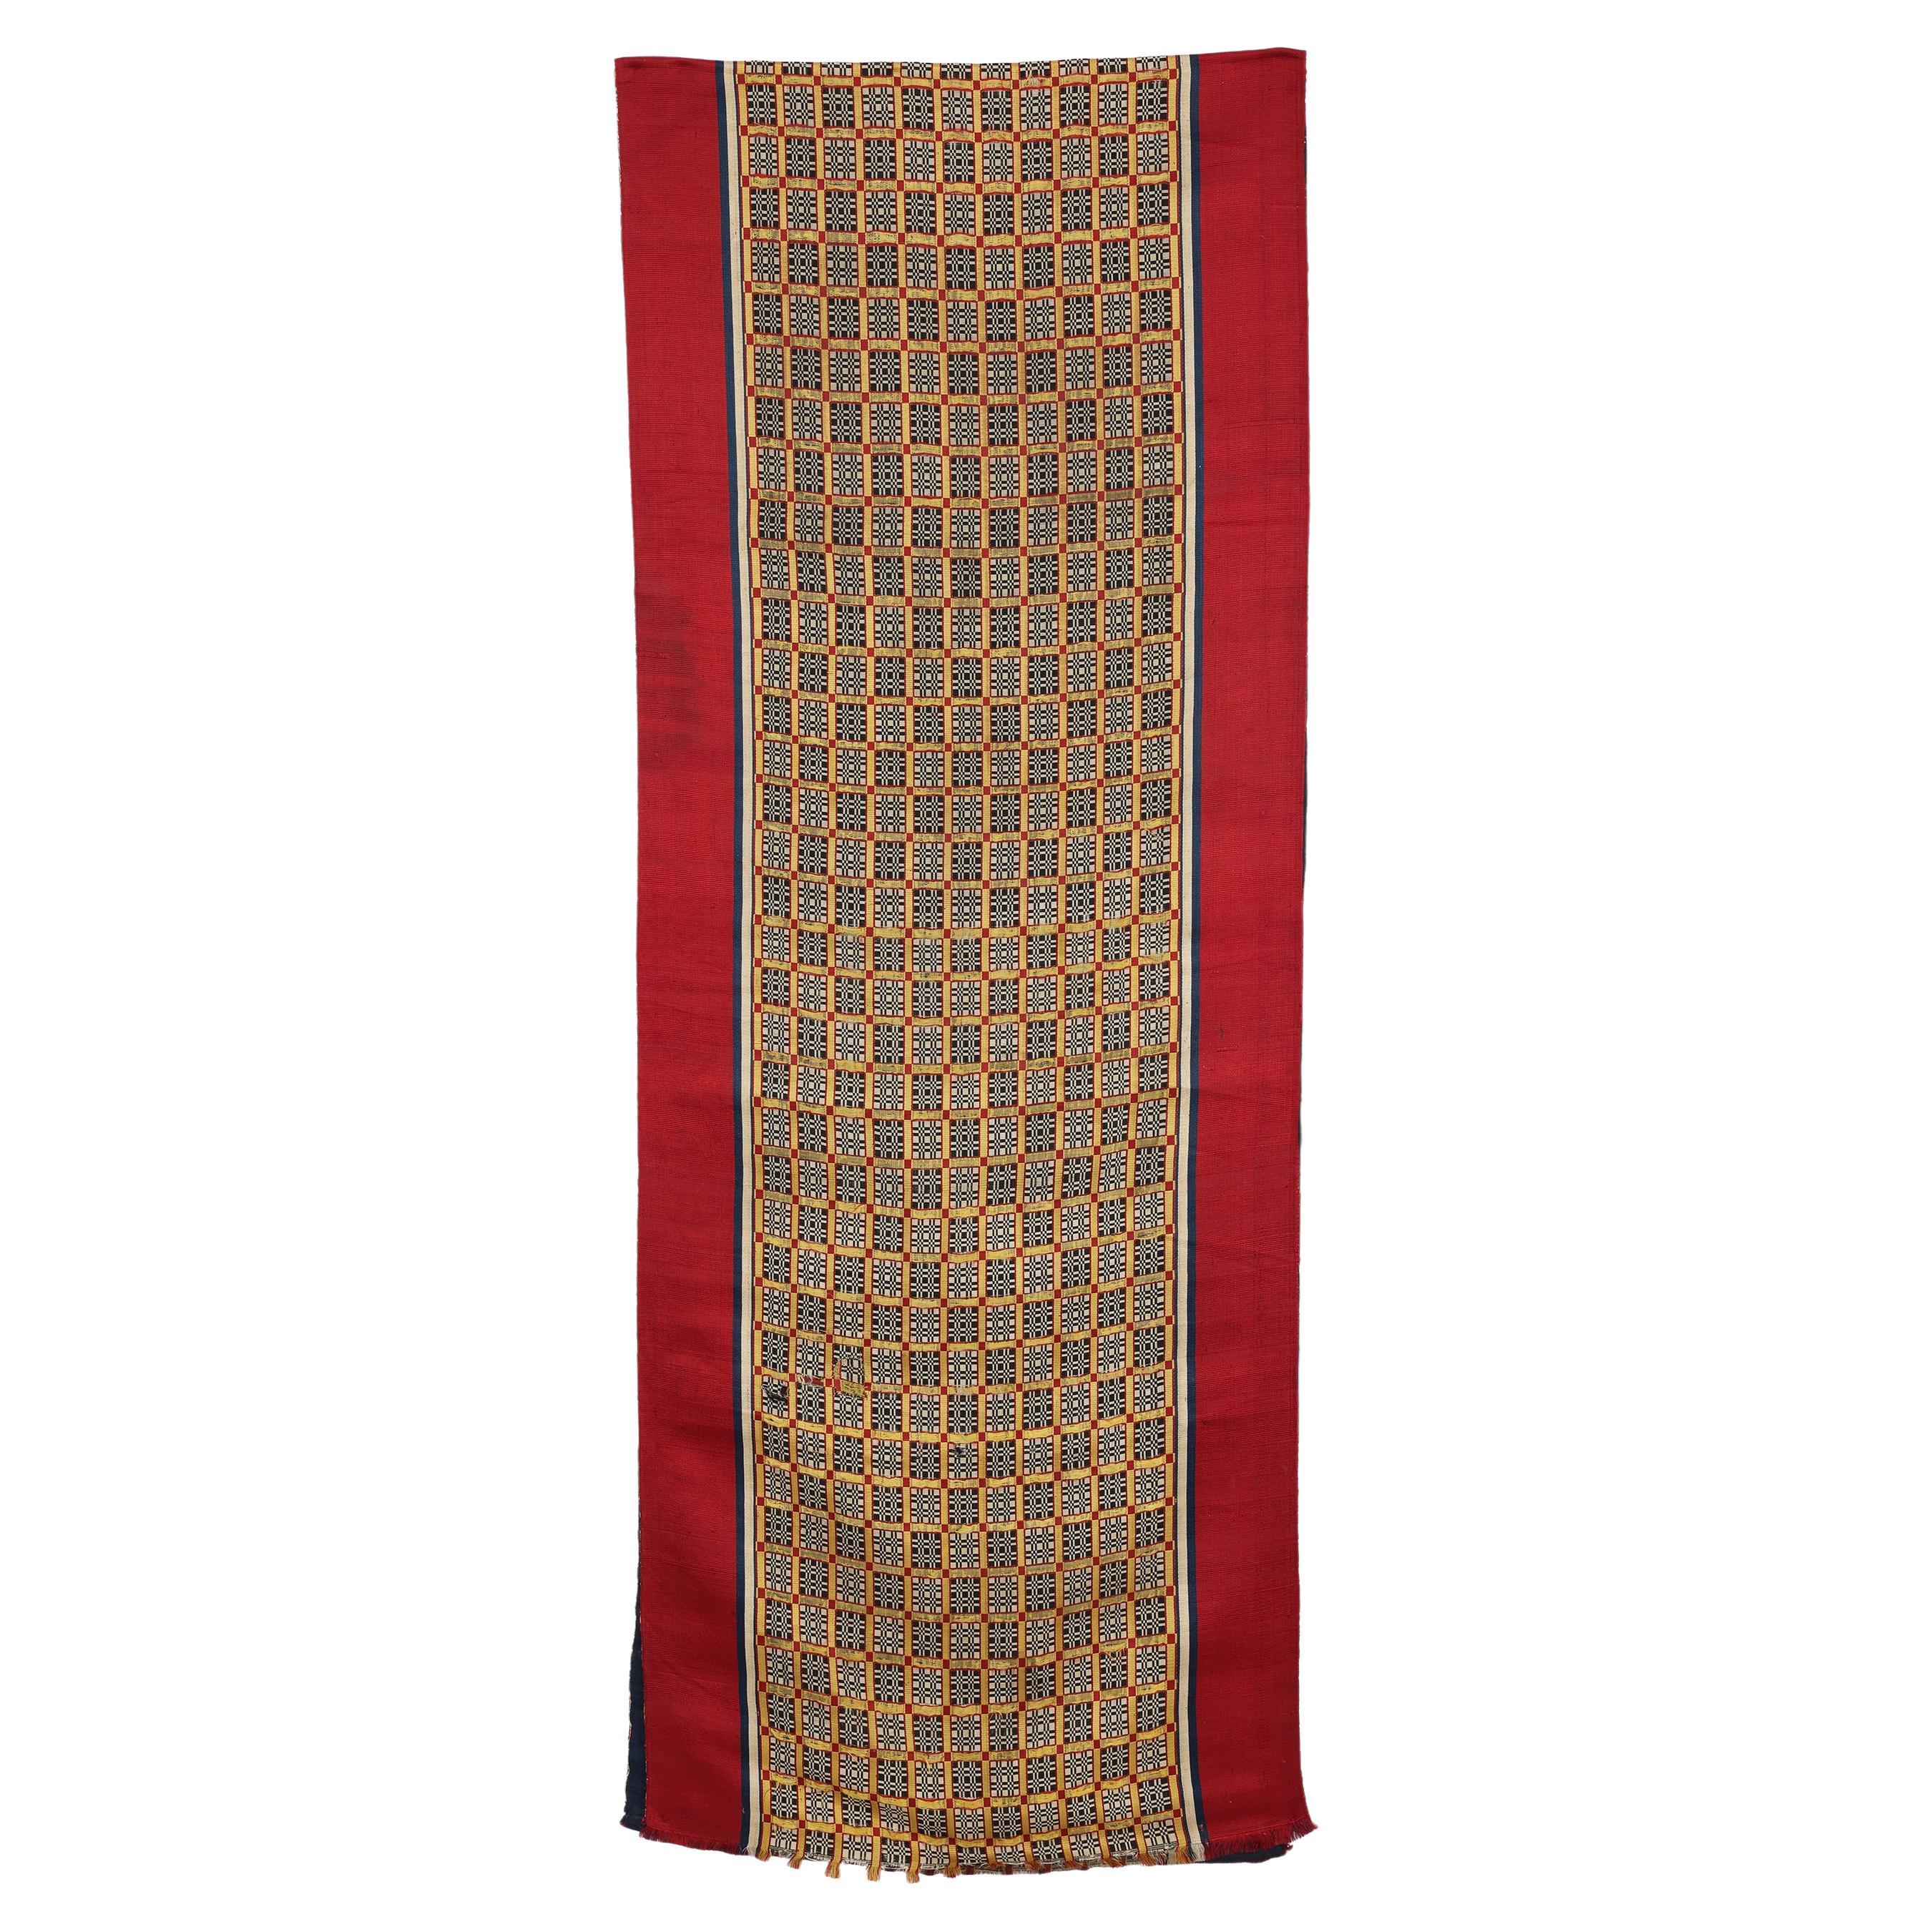 Antique Silk Woven Curtain or Hanging, Tetouan, Morocco